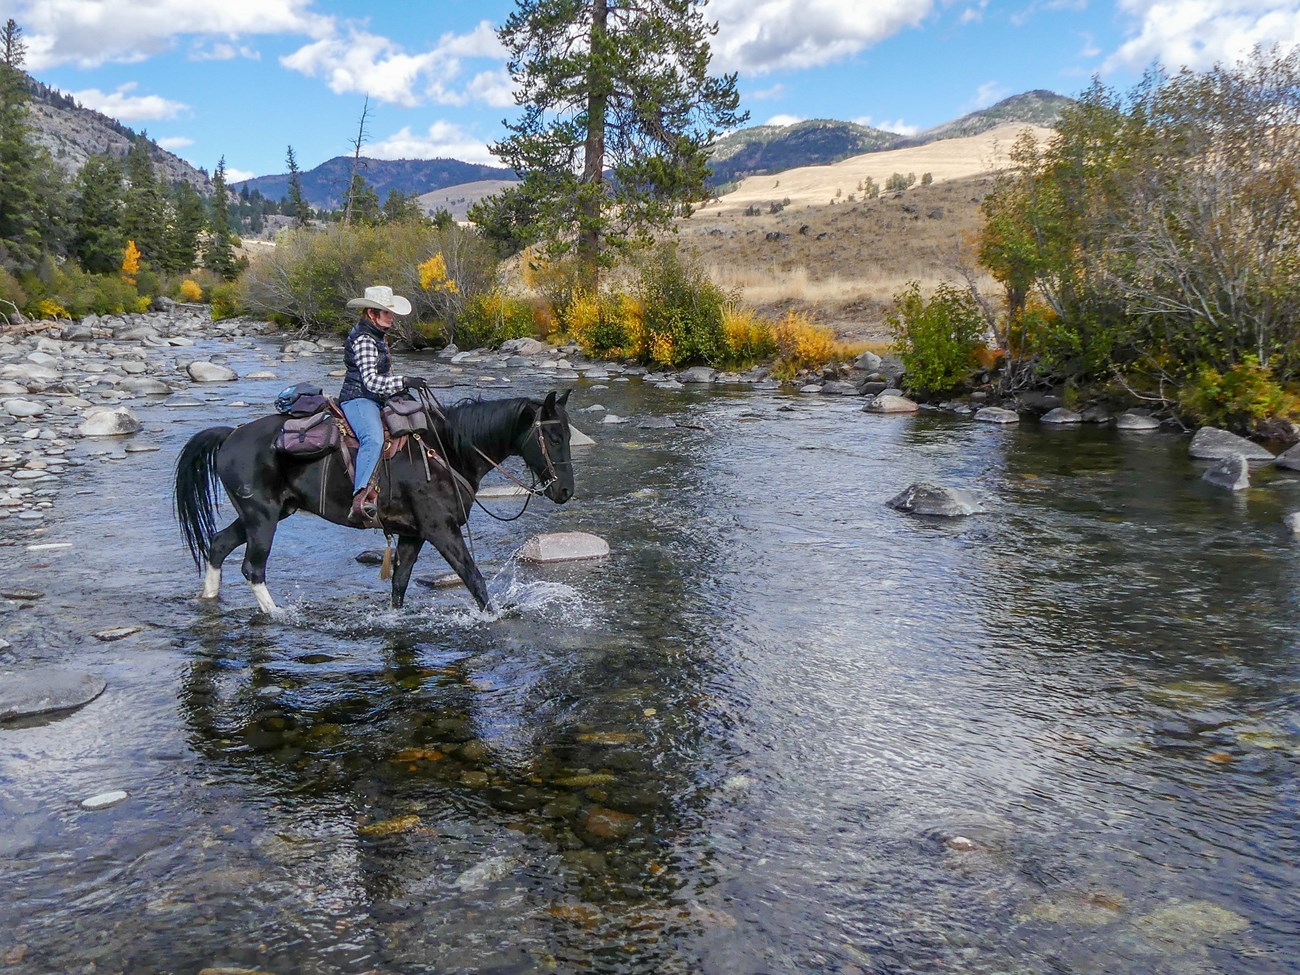 Rider on horseback crossing a stream